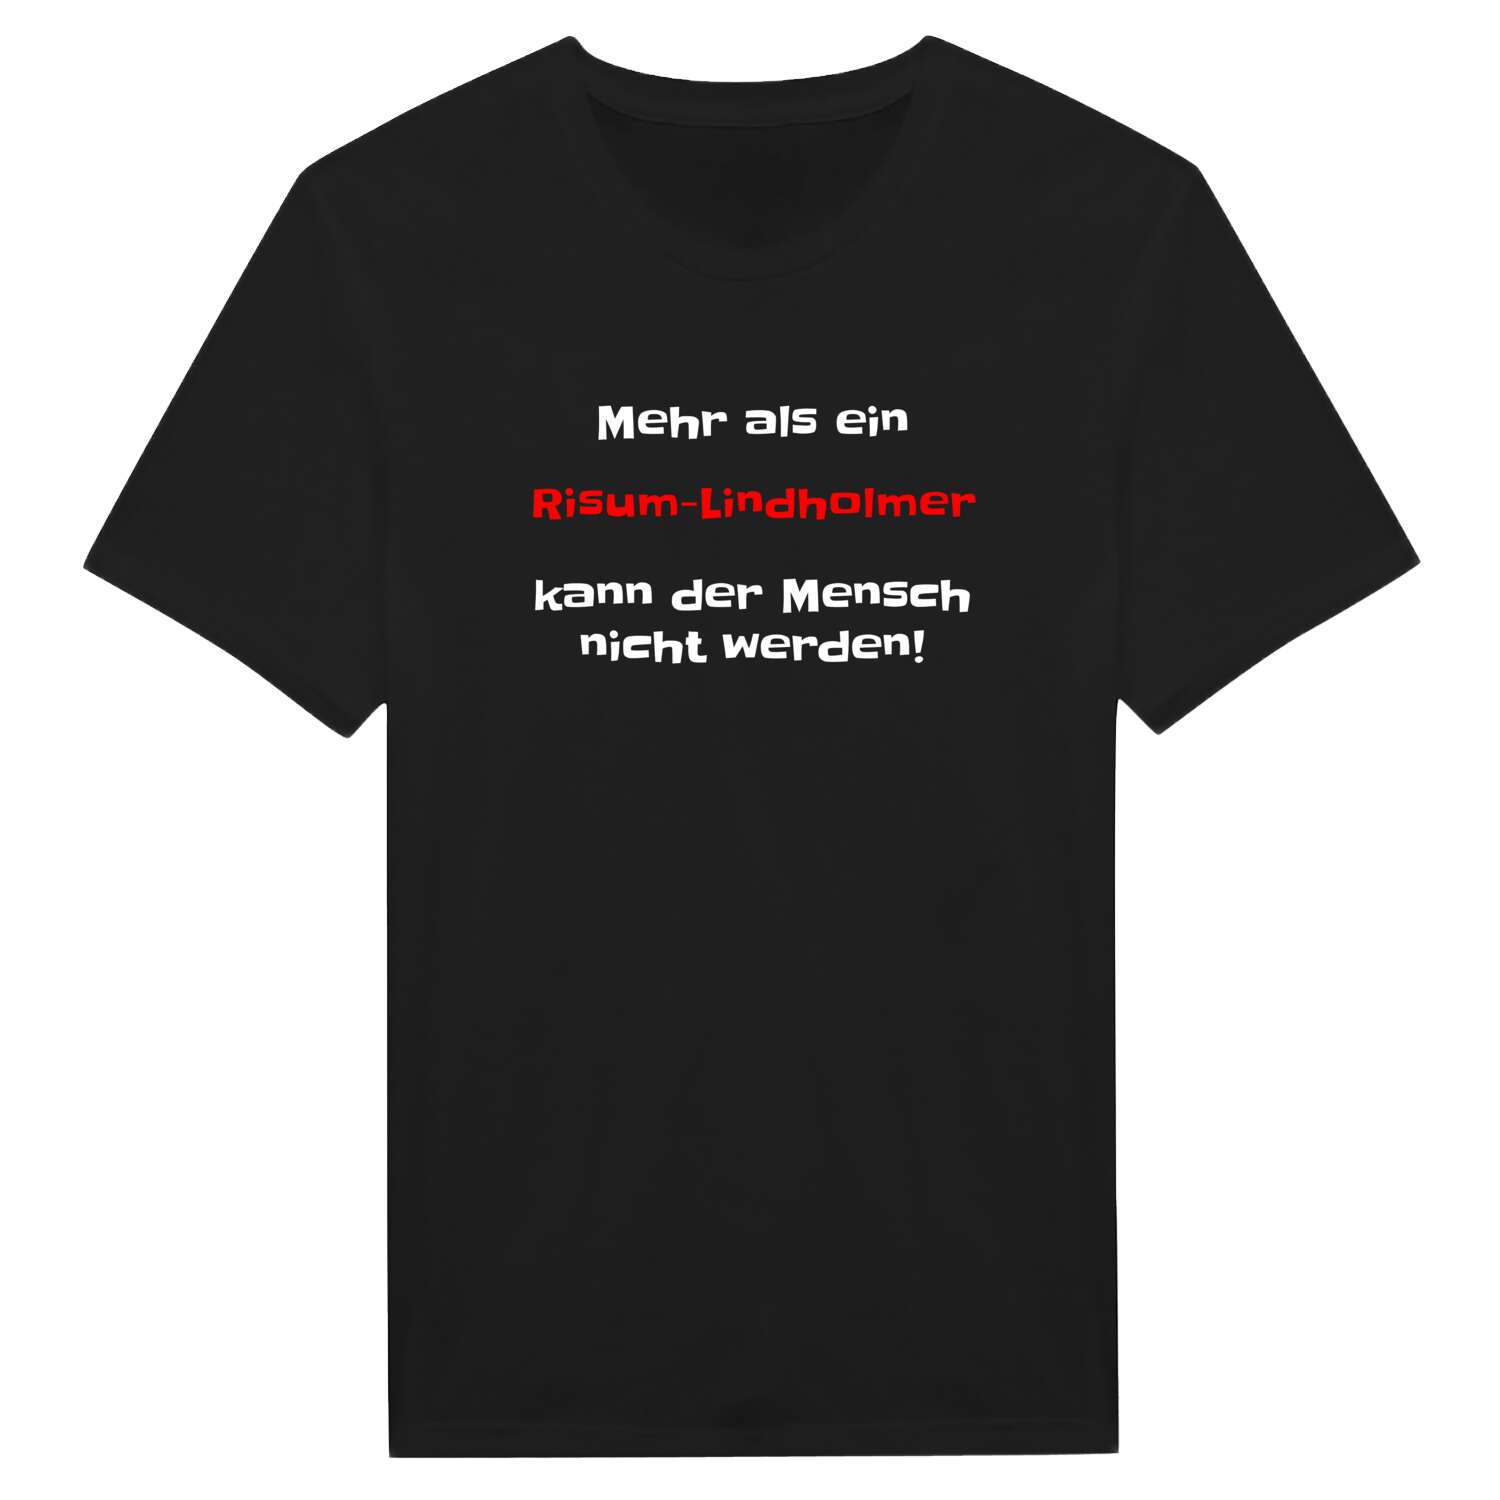 Risum-Lindholm T-Shirt »Mehr als ein«